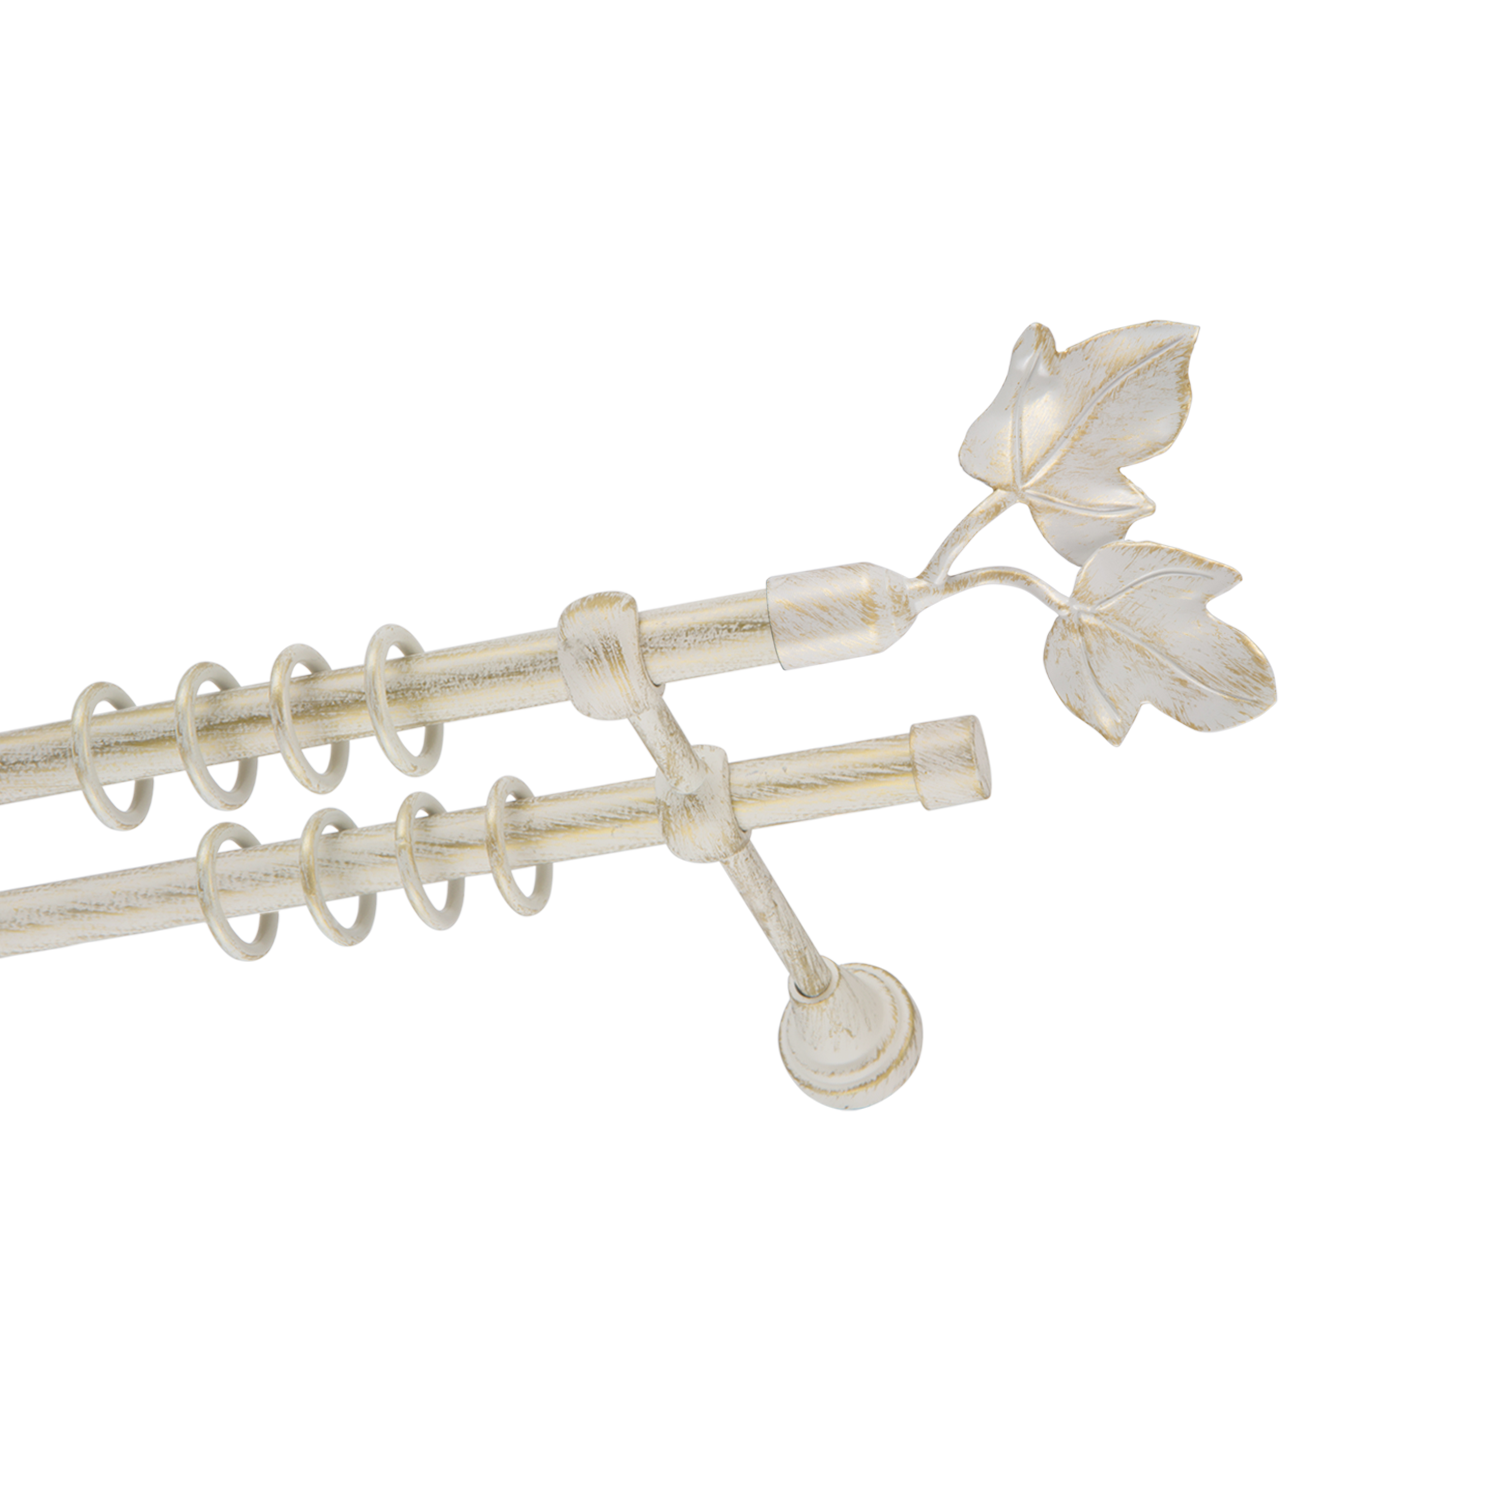 Металлический карниз для штор Листья, двухрядный 16/16 мм, белый, гладкая штанга, длина 180 см - фото Wikidecor.ru